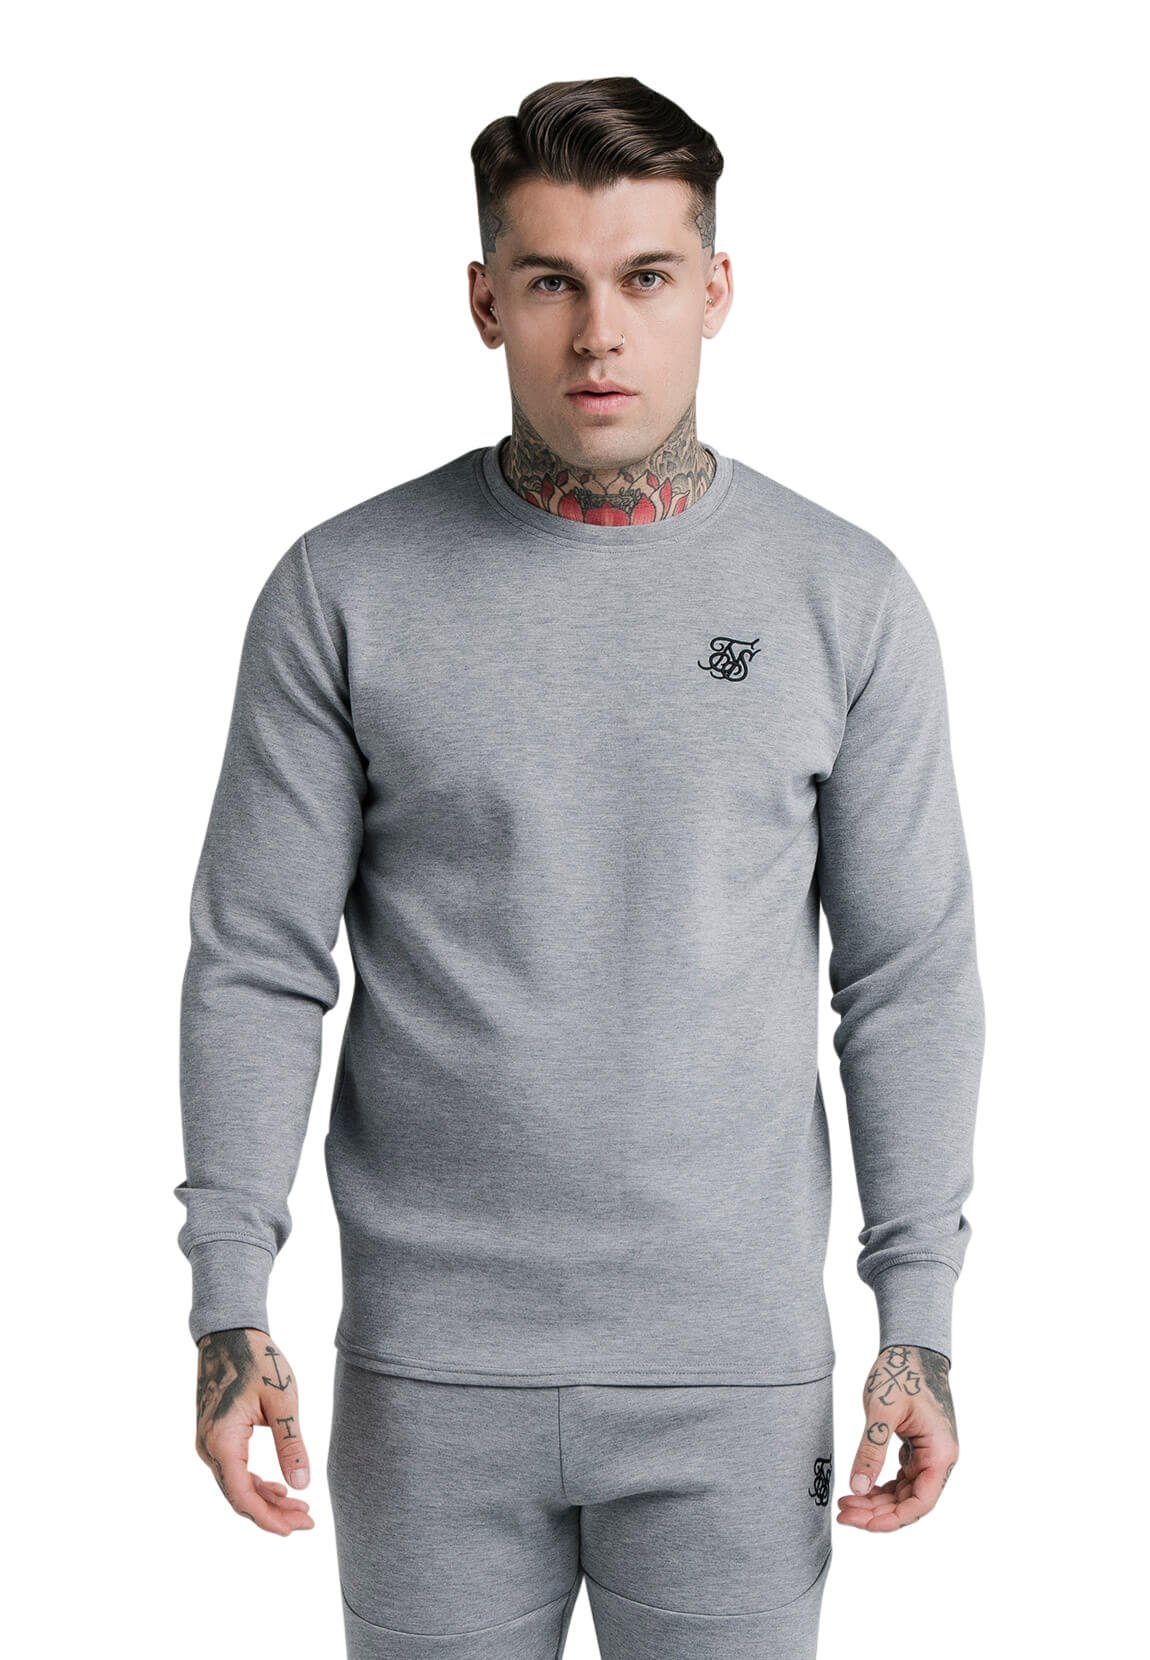 Höhepunkt der Popularität Siksilk Sweater SikSilk Herren Crewneck Marl SWEATER SS-18341 Grau EXHIBIT Grey